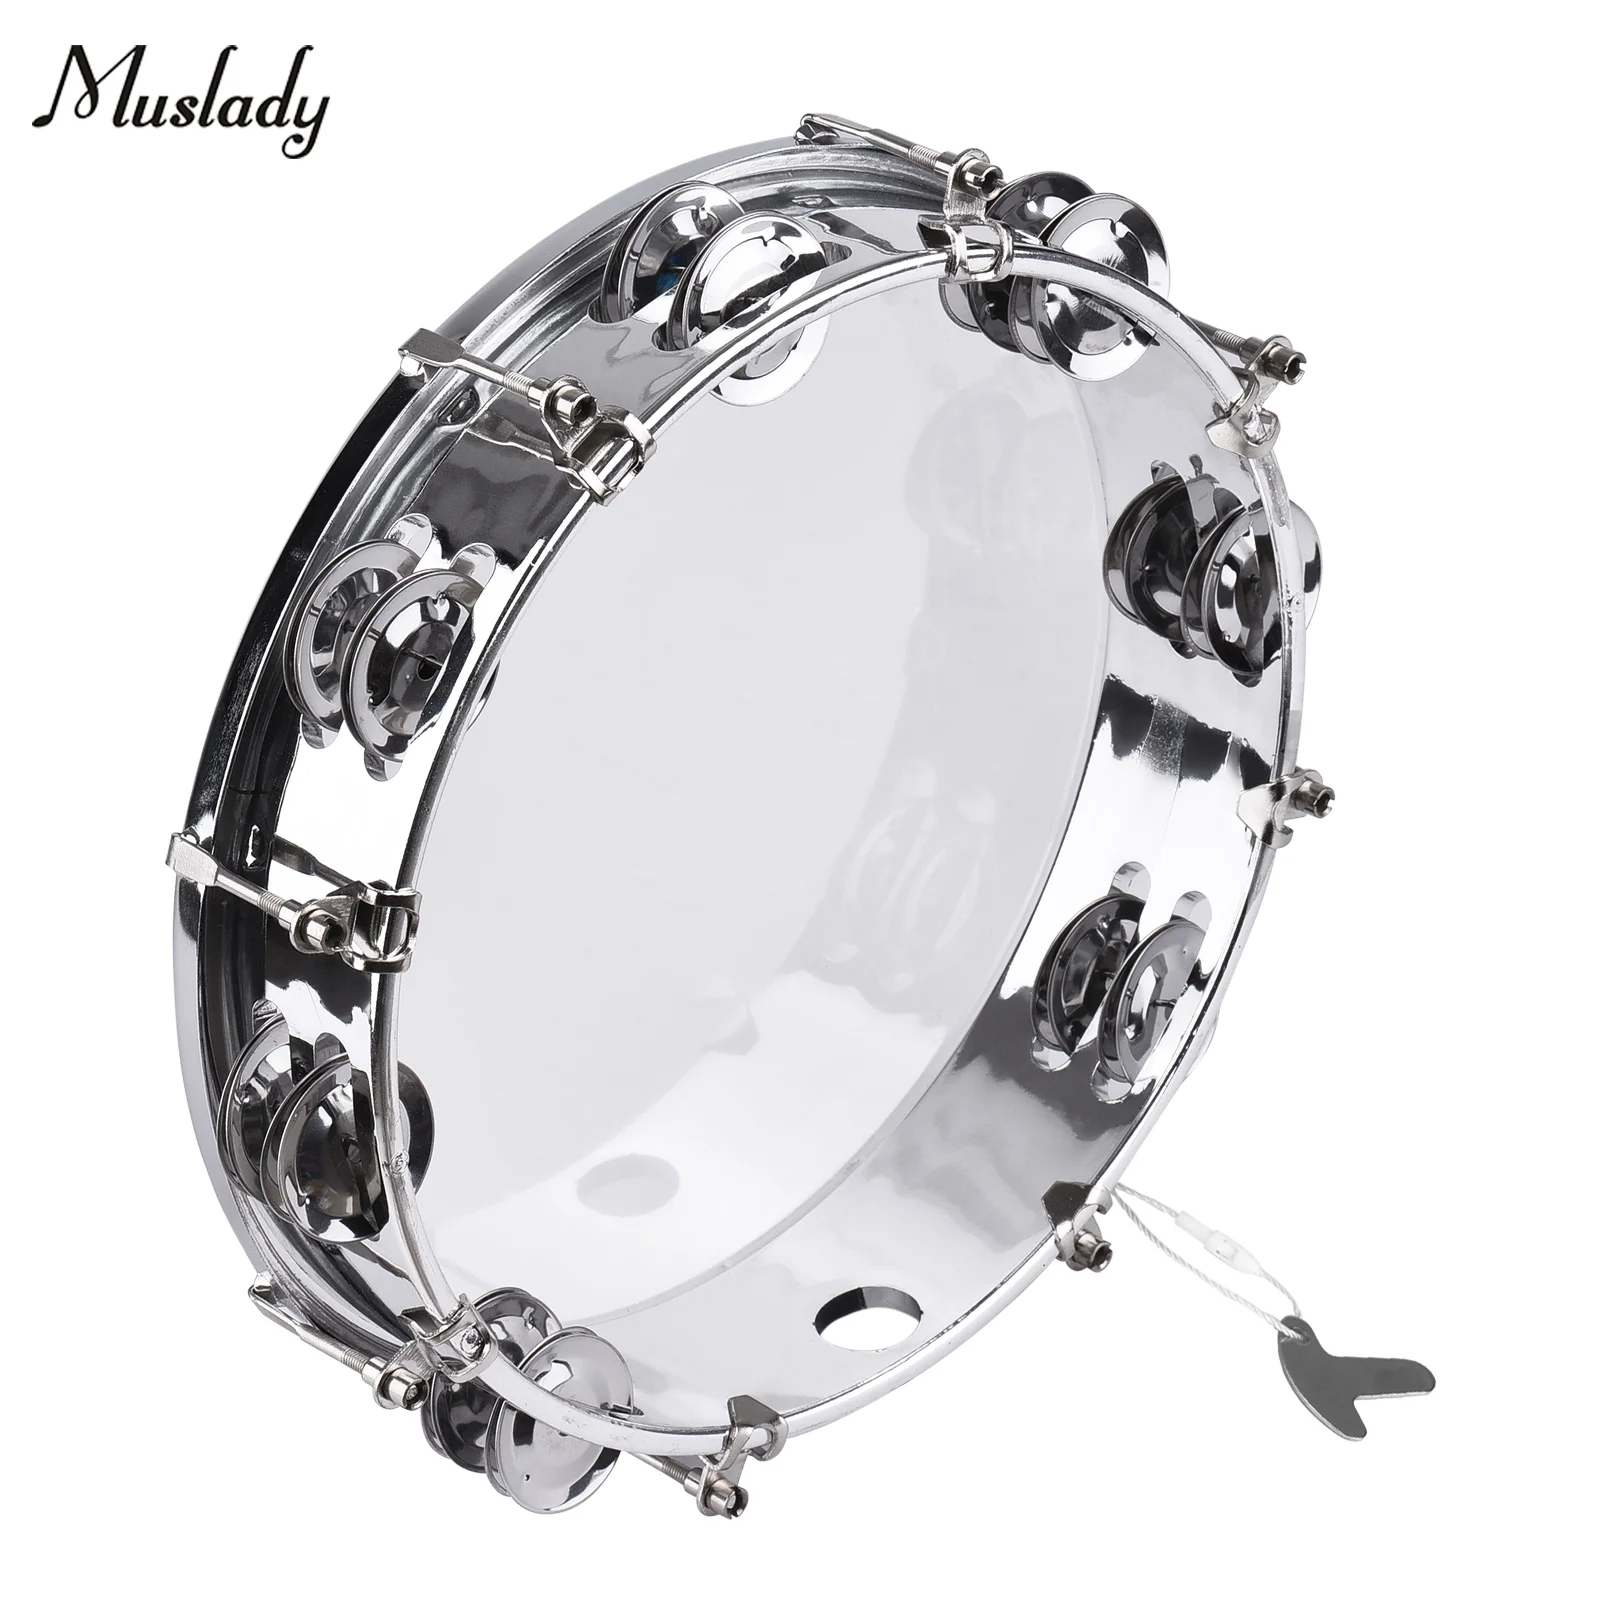 

Muslady 8-дюймовый бубен ручной барабан с двойным рядом Jingles ударный инструмент